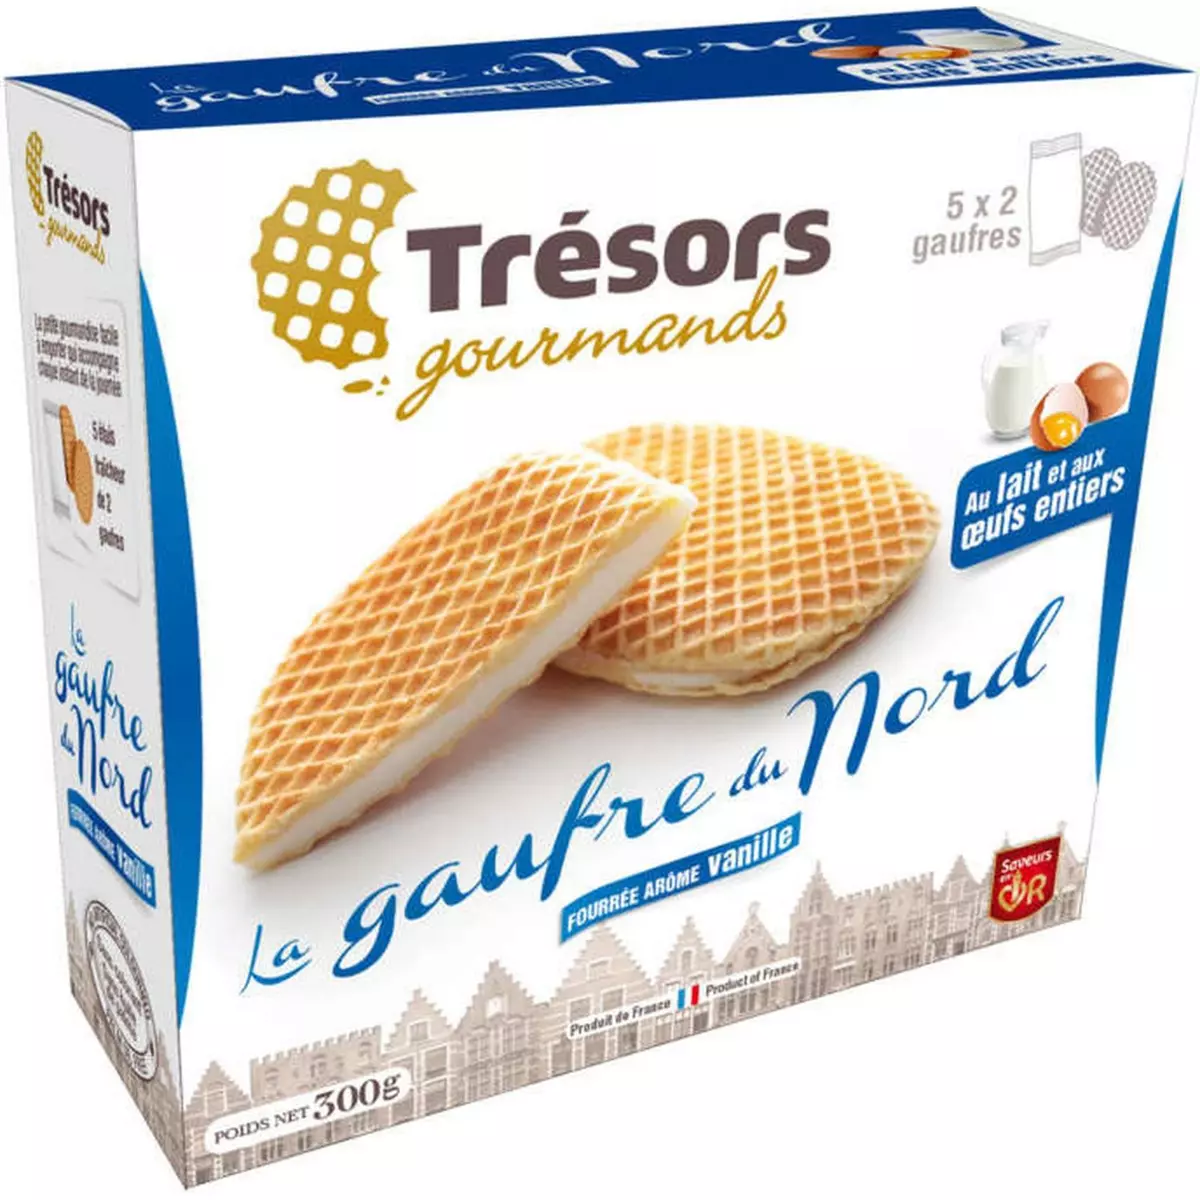 TRESORS GOURMANDS La gaufre du Nord fourrée arôme vanille 300g